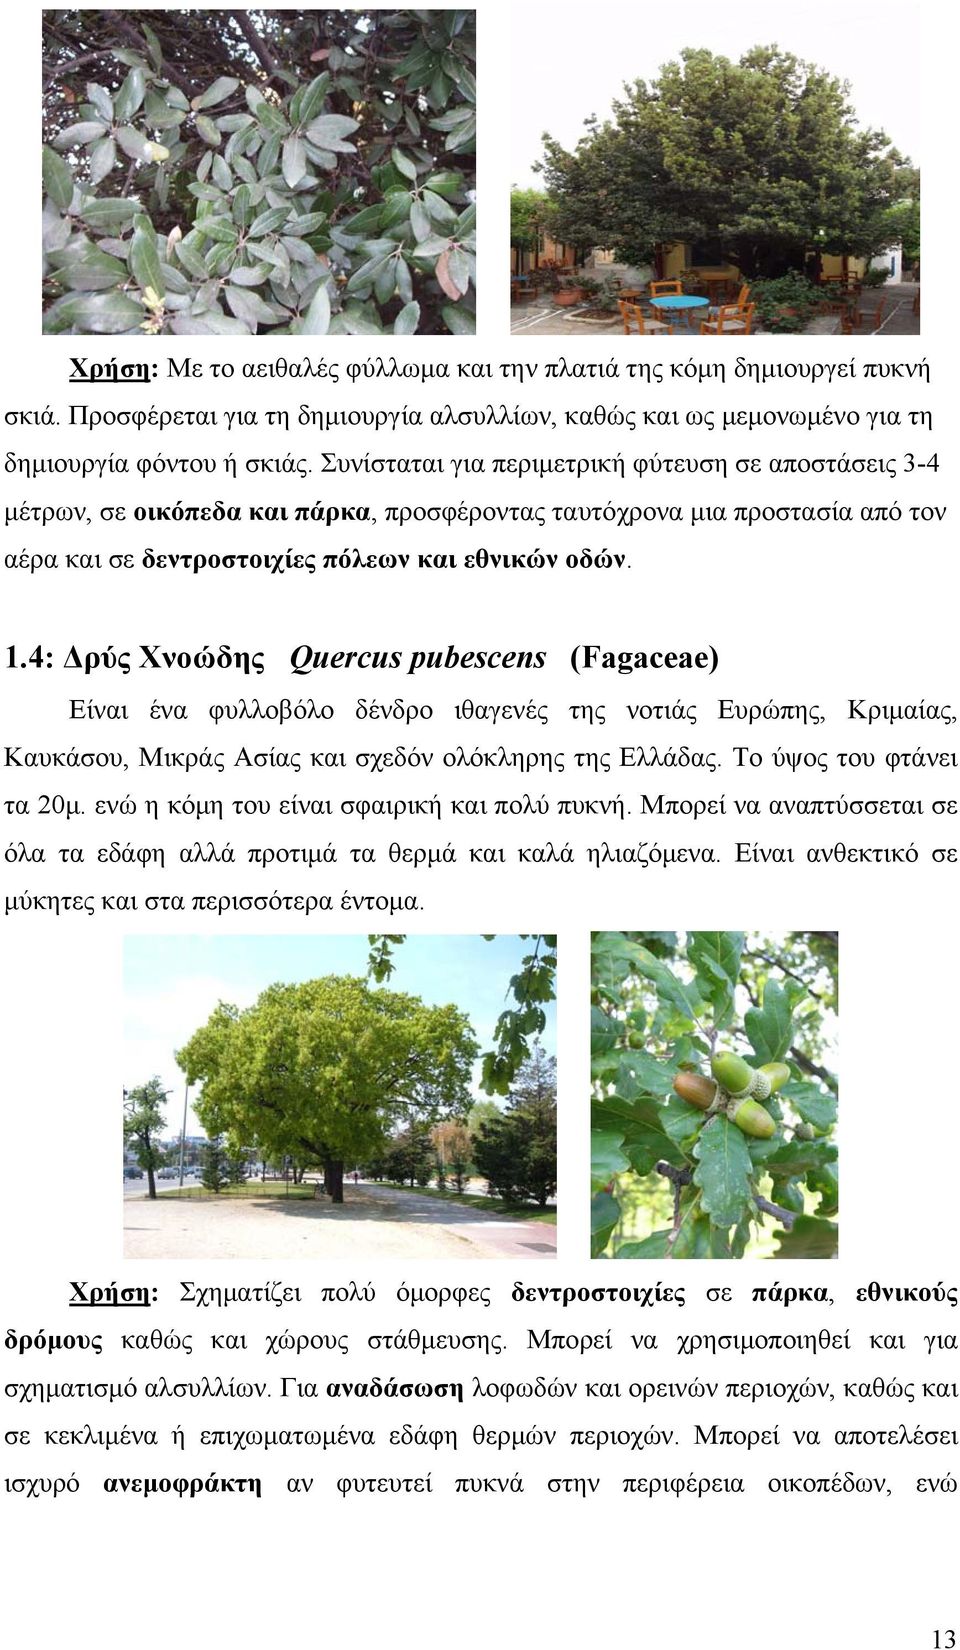 4: Δρύς Χνοώδης Quercus pubescens (Fagaceae) Είναι ένα φυλλοβόλο δένδρο ιθαγενές της νοτιάς Ευρώπης, Κριμαίας, Καυκάσου, Μικράς Ασίας και σχεδόν ολόκληρης της Ελλάδας. Το ύψος του φτάνει τα 20μ.